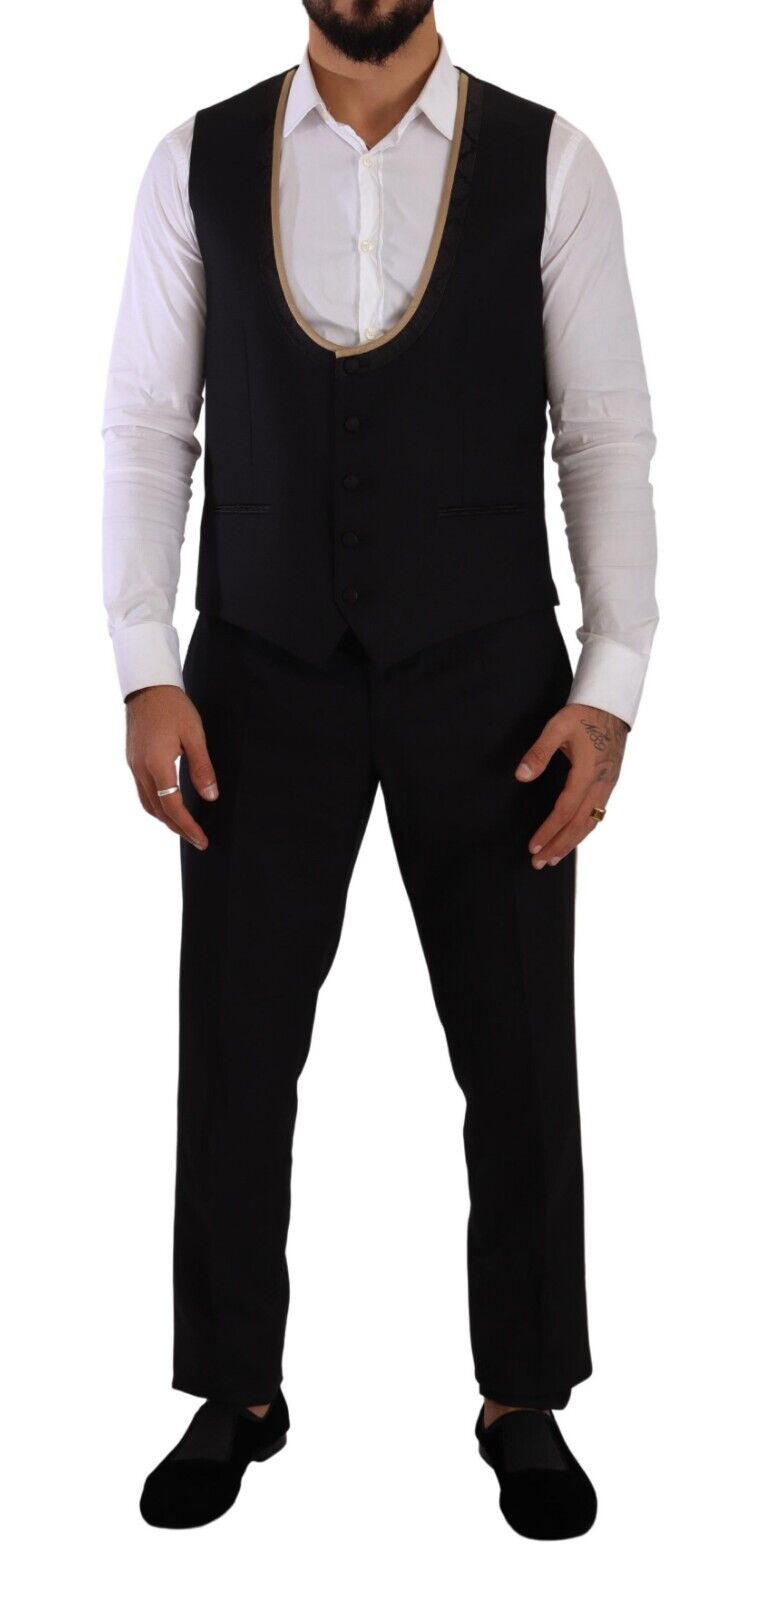 Black SICILIA Single Breasted 3 Piece Suit